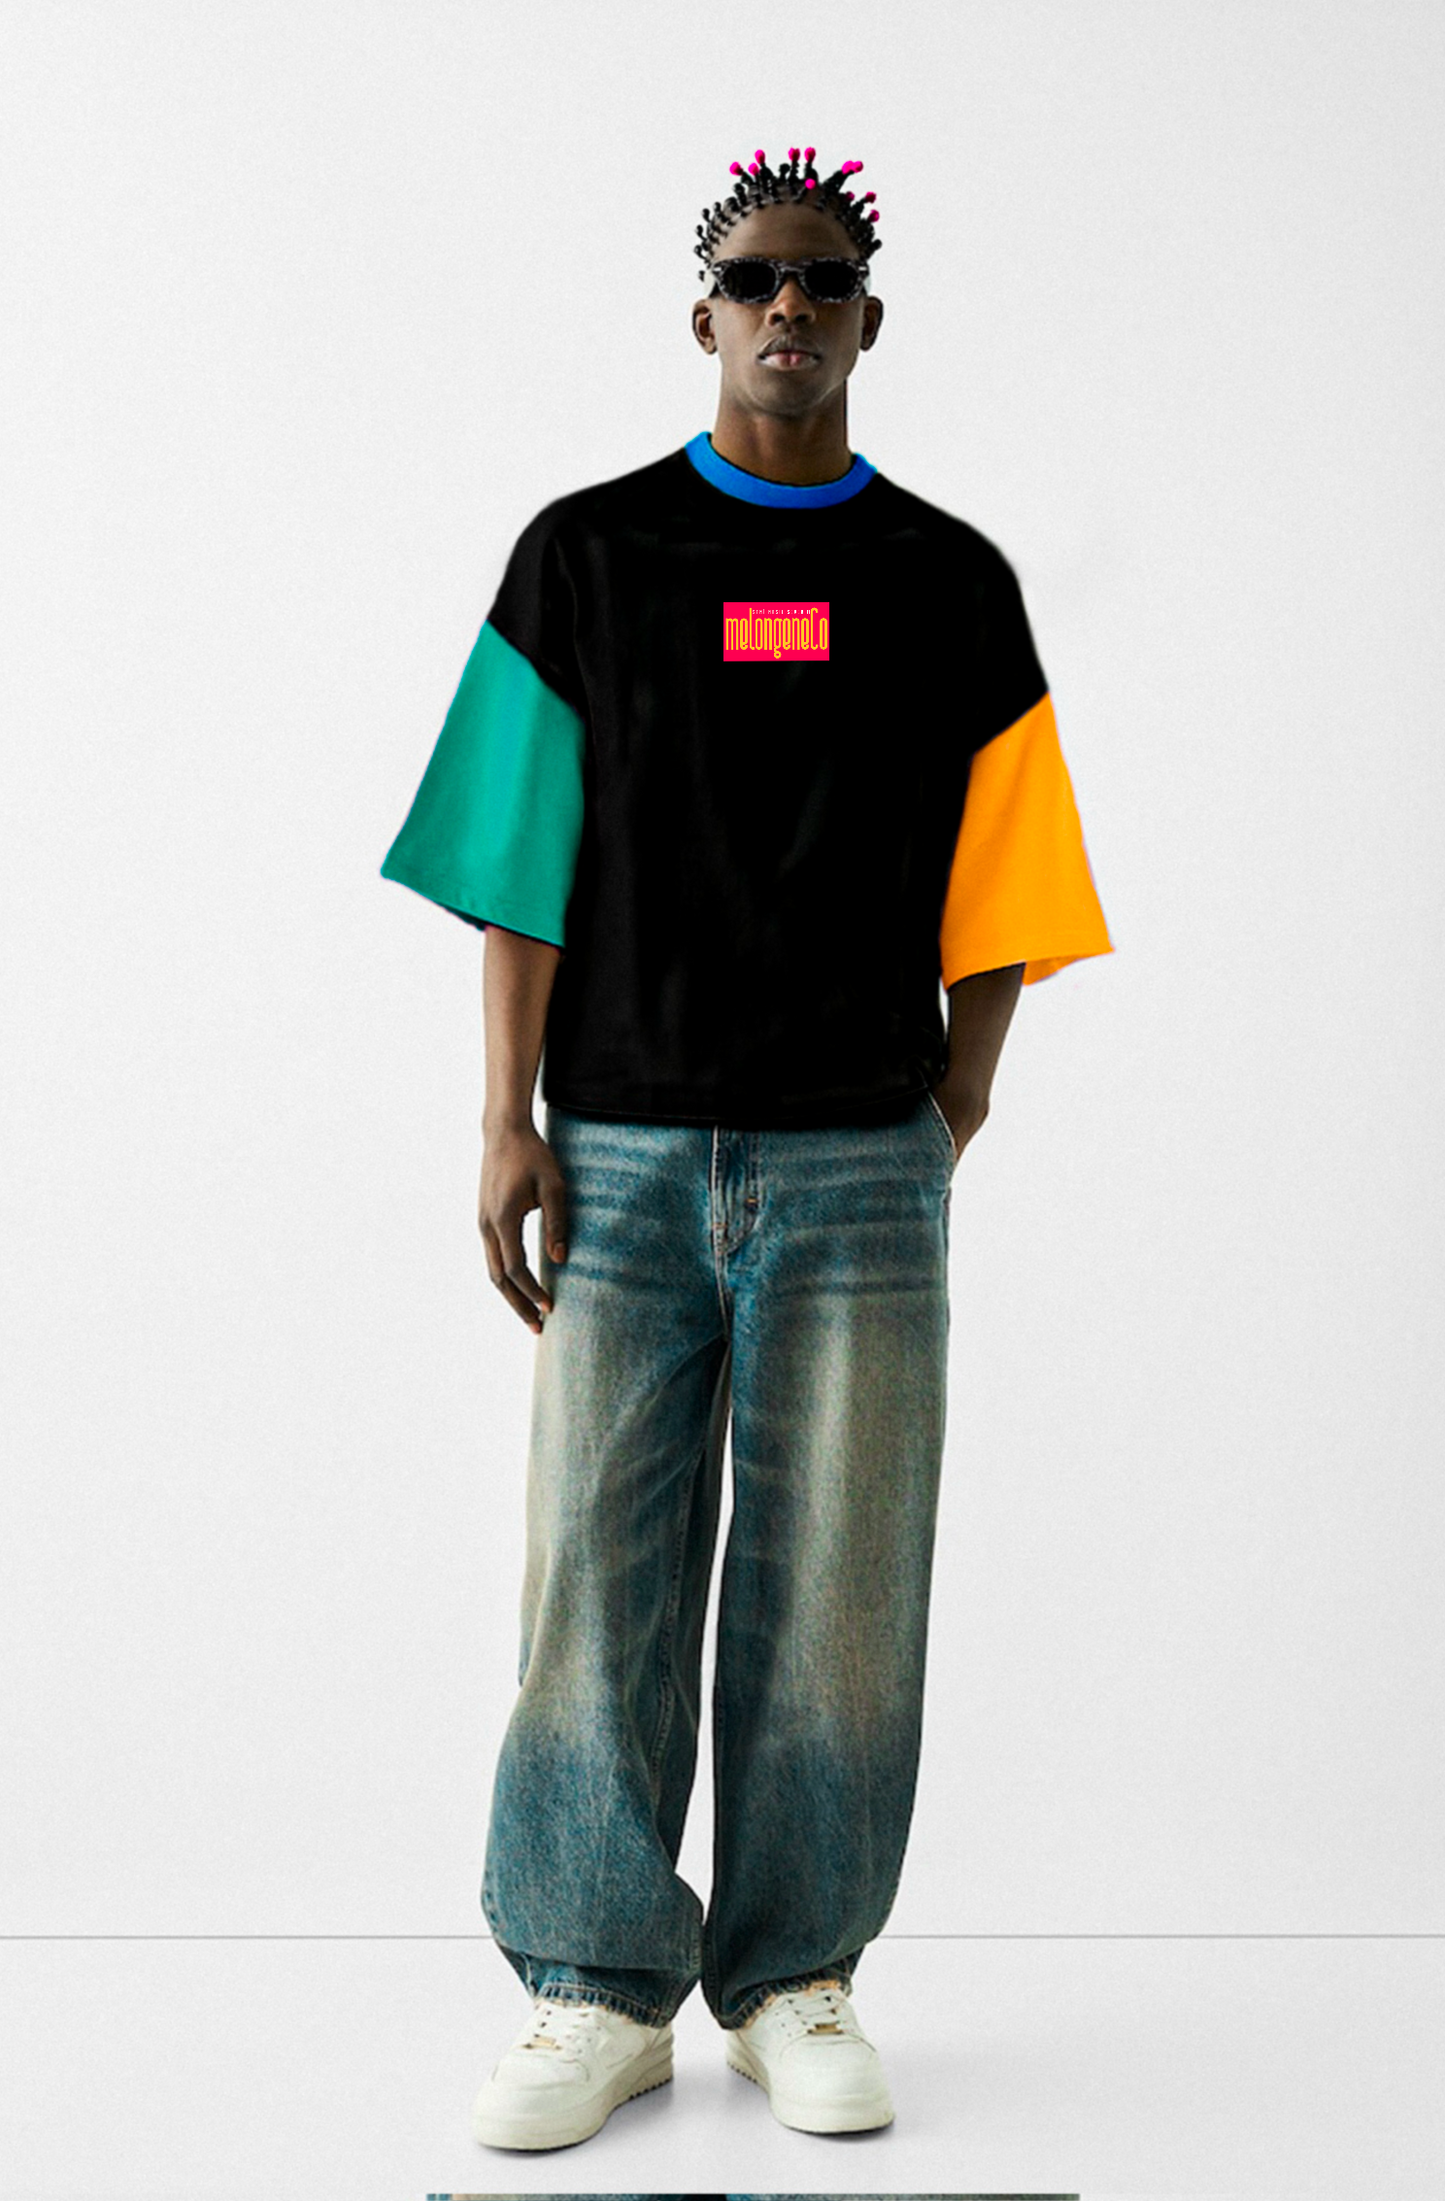 Seni nasıl severim? -rengarenk / siyah oversize midi tasarım tişört - melongeneCo